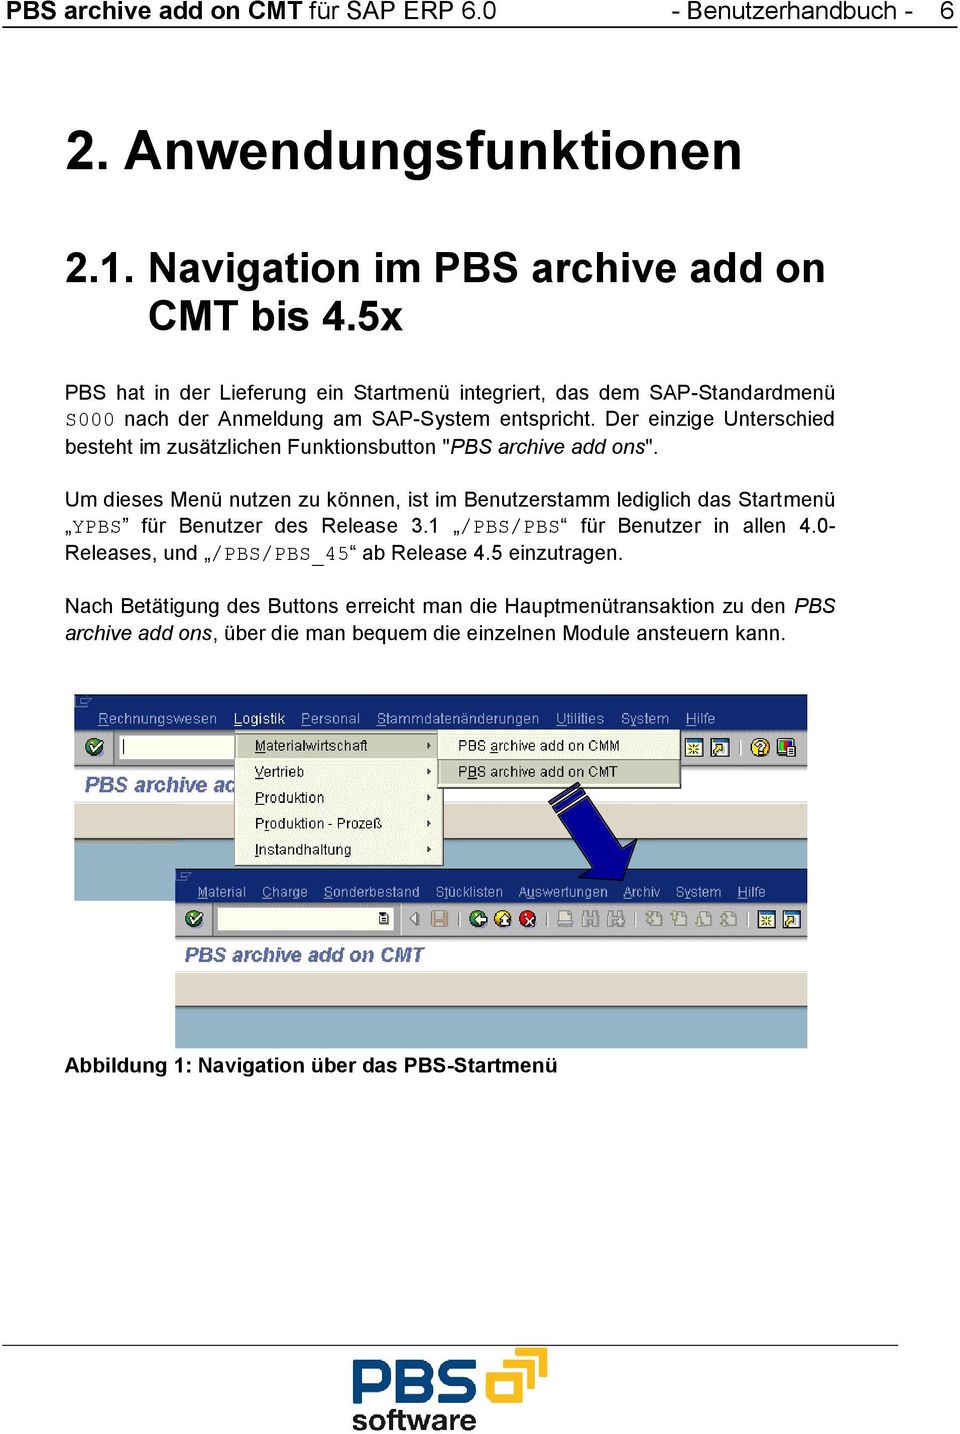 Der einzige Unterschied besteht im zusätzlichen Funktionsbutton "PBS archive add ons".